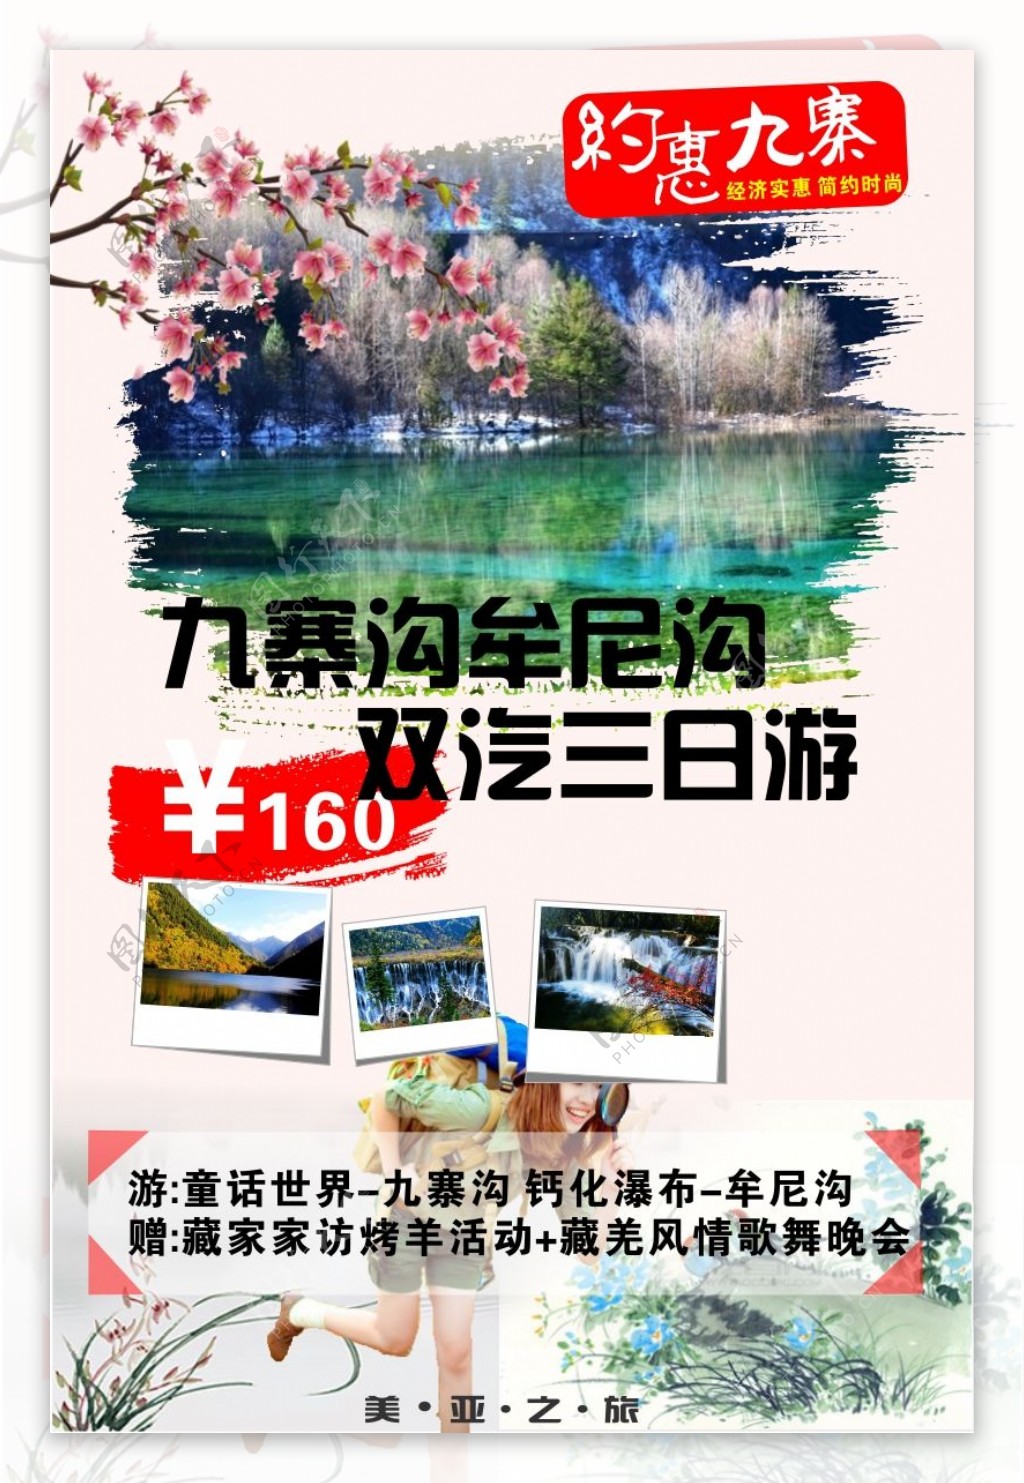 旅行社九寨沟宣传广告海报CDR版本